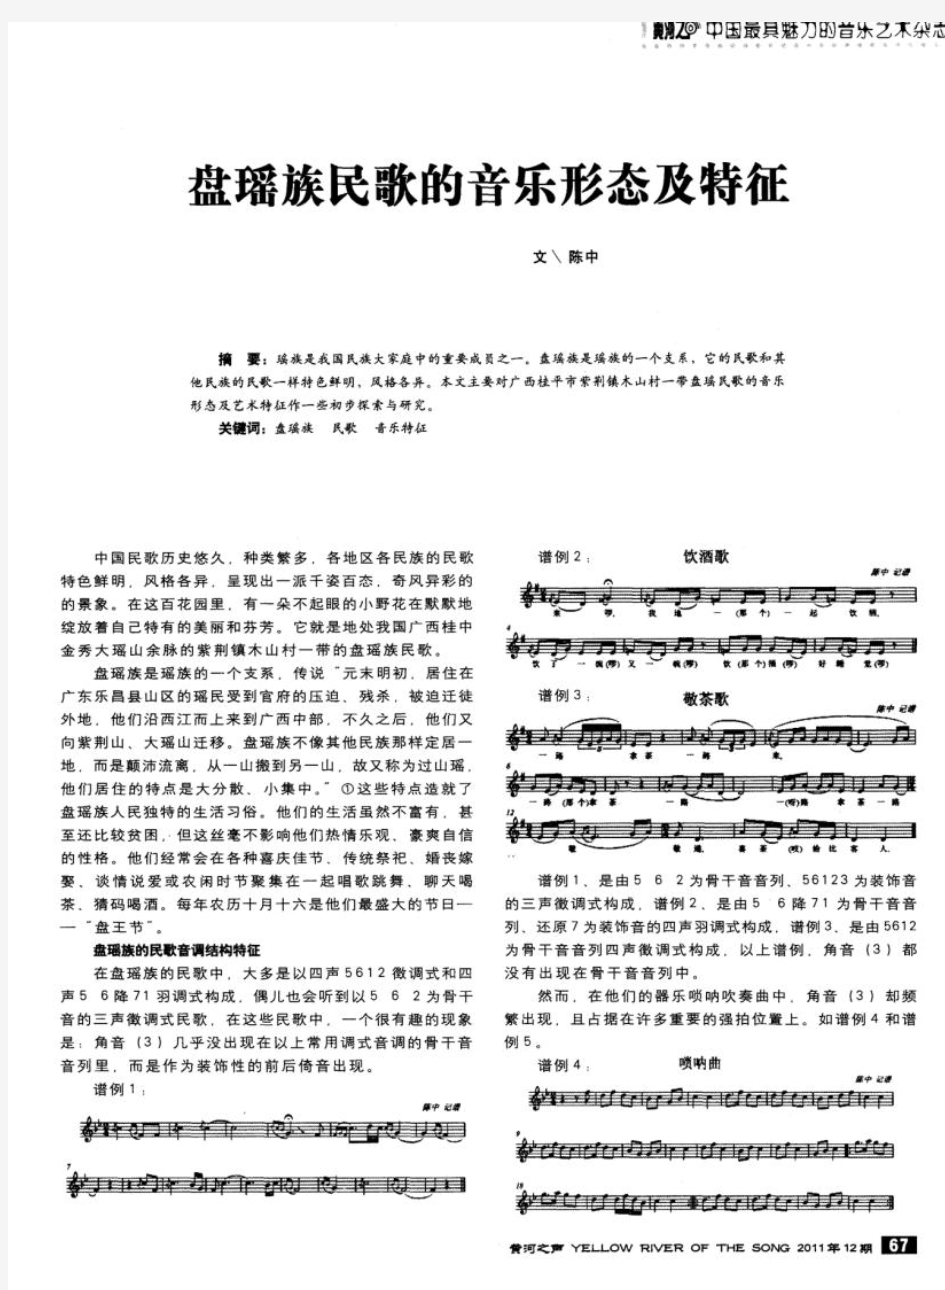 盘瑶族民歌的音乐形态及特征